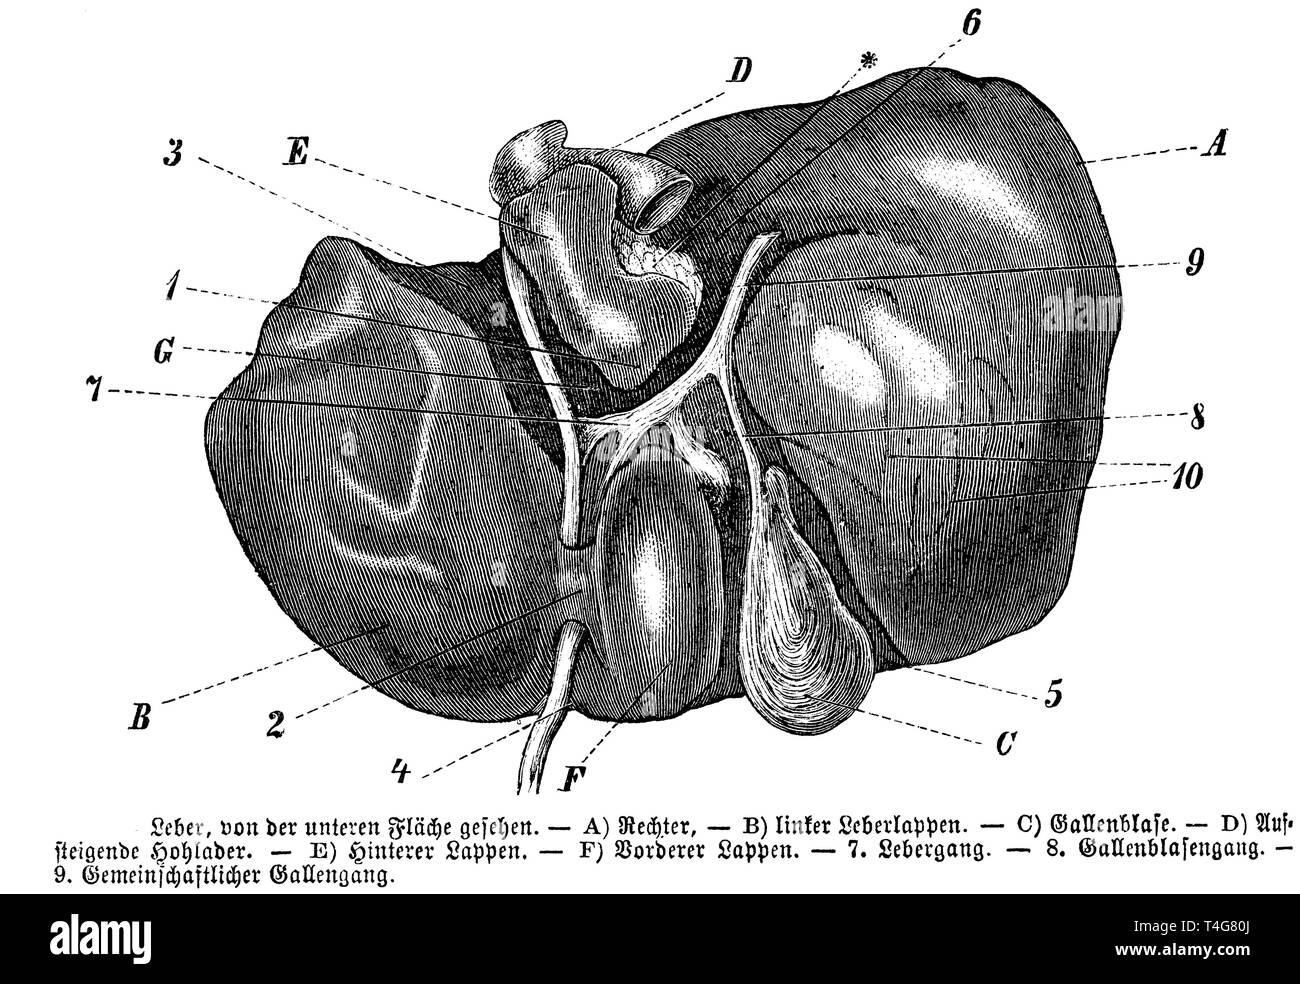 Il fegato umano. A) destro, B) lobo sinistro del fegato, C) gallbladder, D) arteria ascendente, E) lobo posteriore, F) lobo anteriore, 7) Fegato ghiandola, 8) gallbladder, 9) condotto biliare comune, anonym 1887 Foto Stock